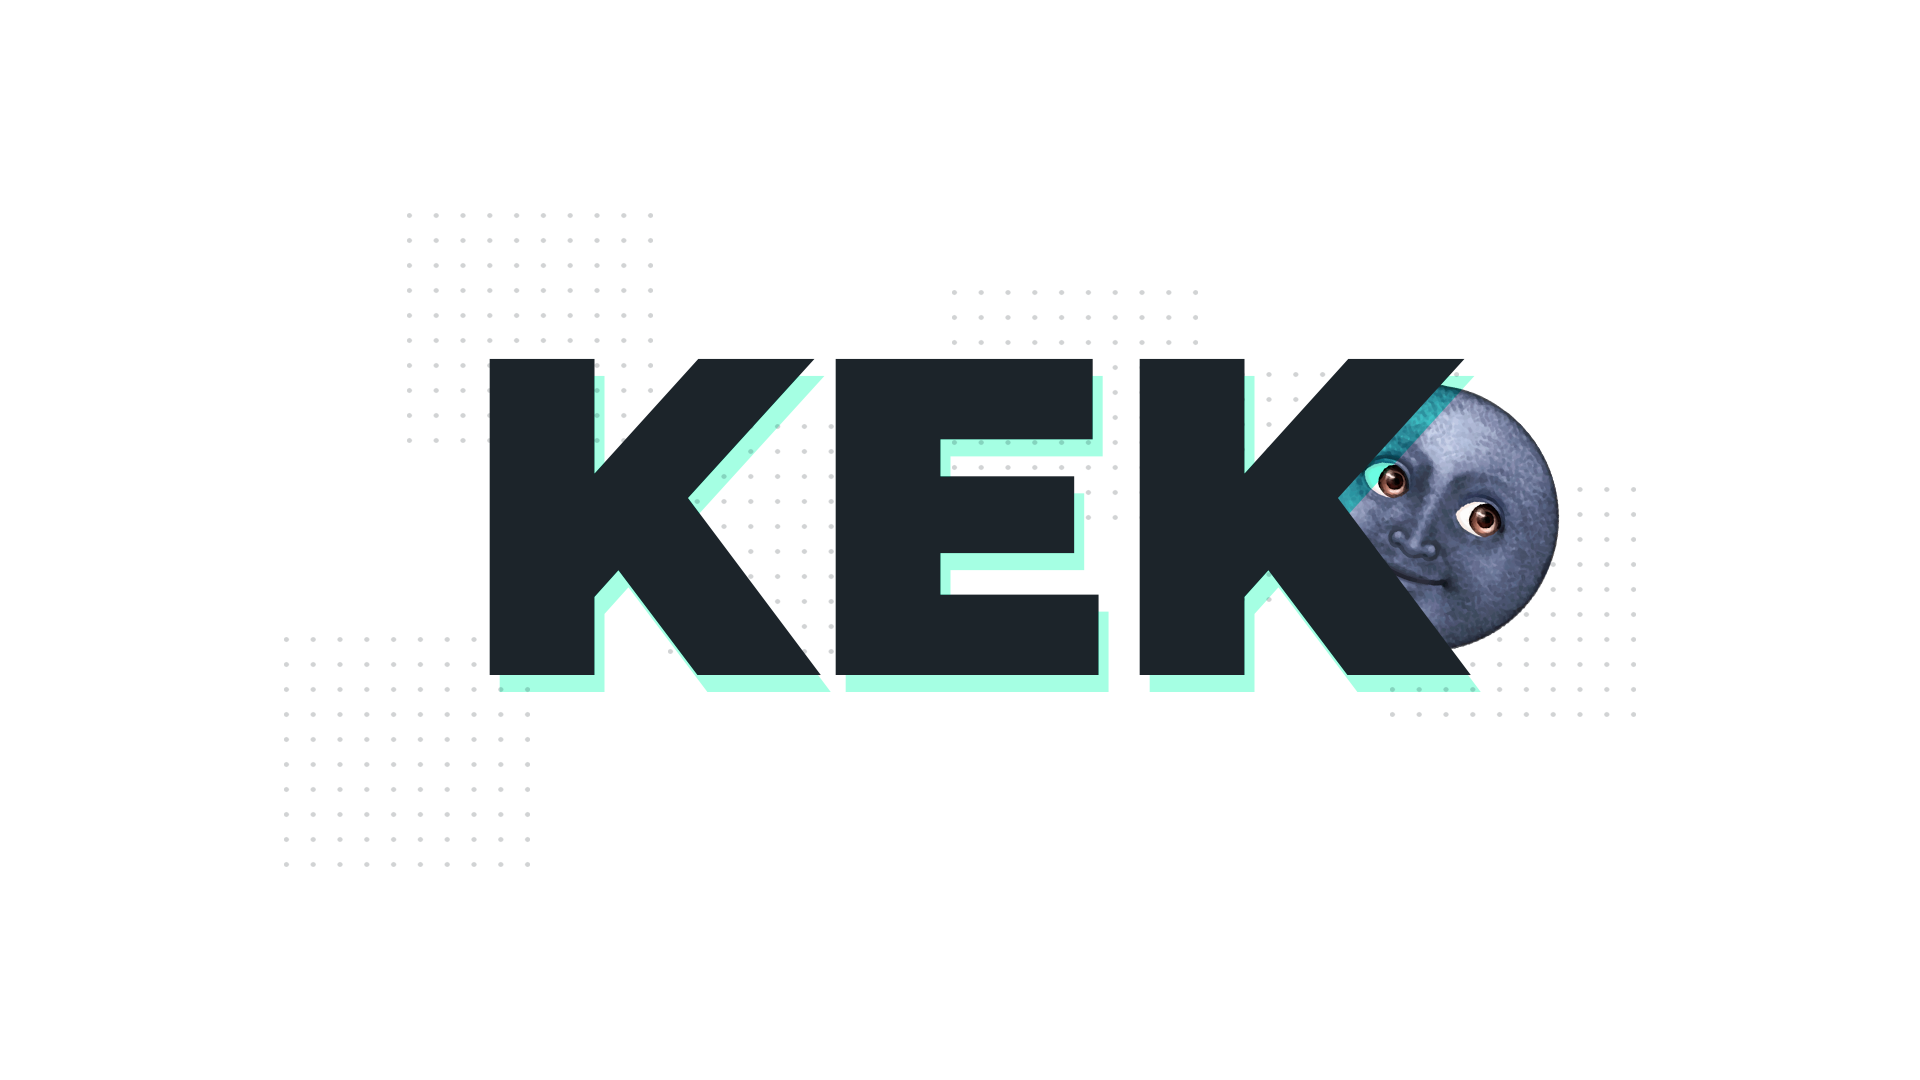 Kek Logo